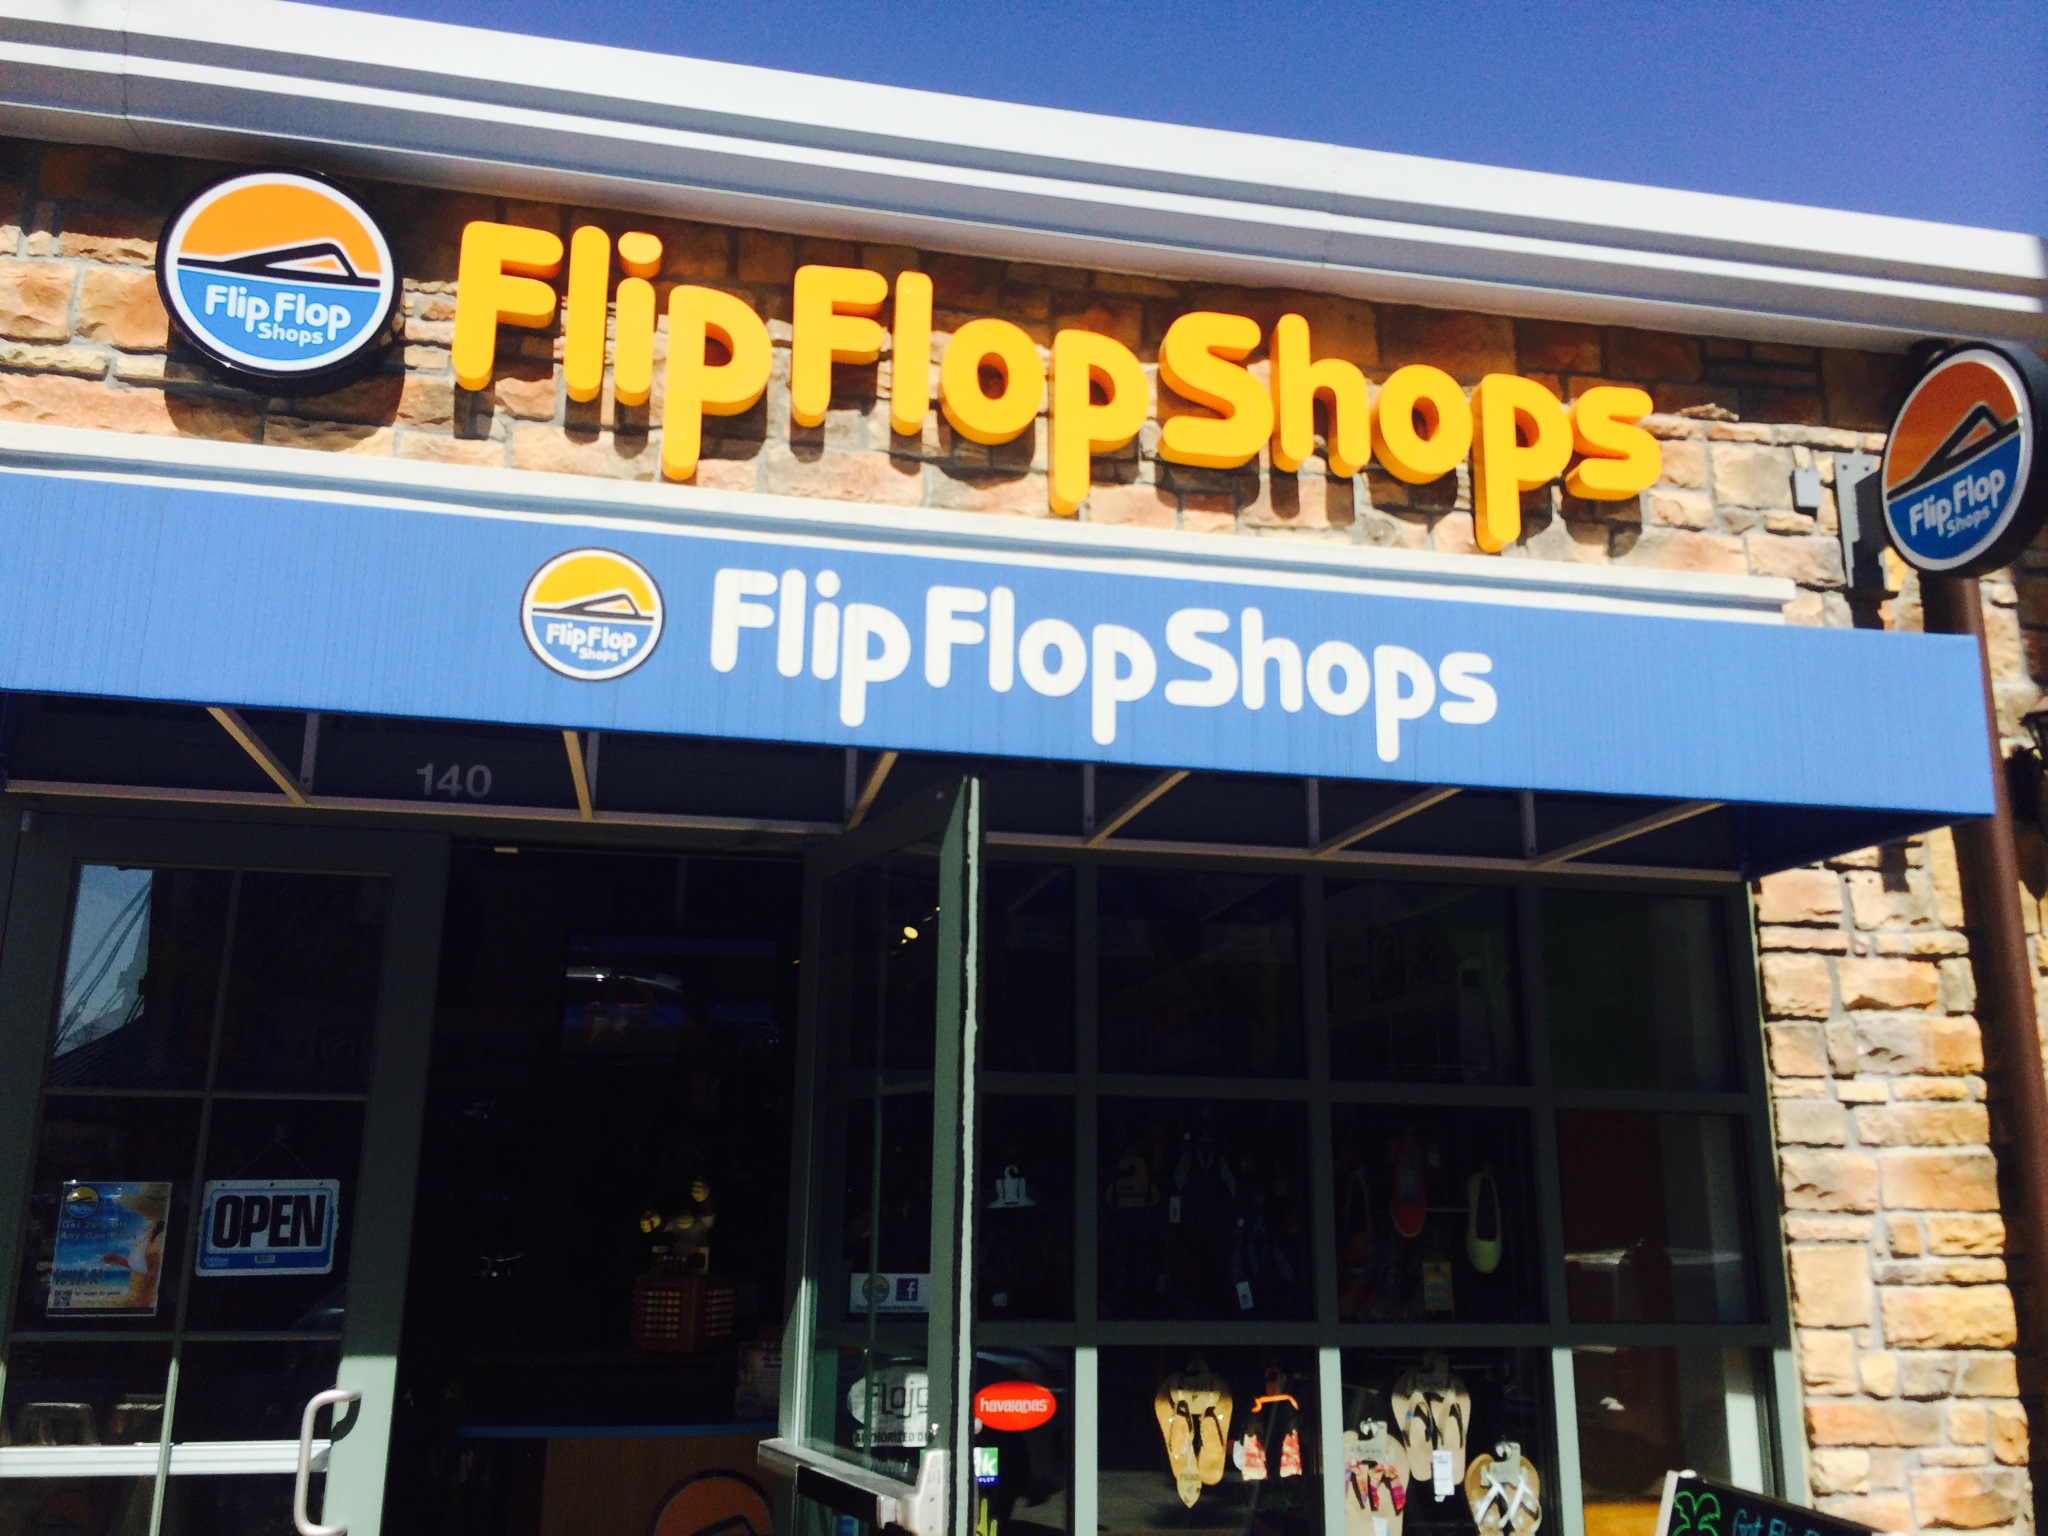 The flip flop shops want you!